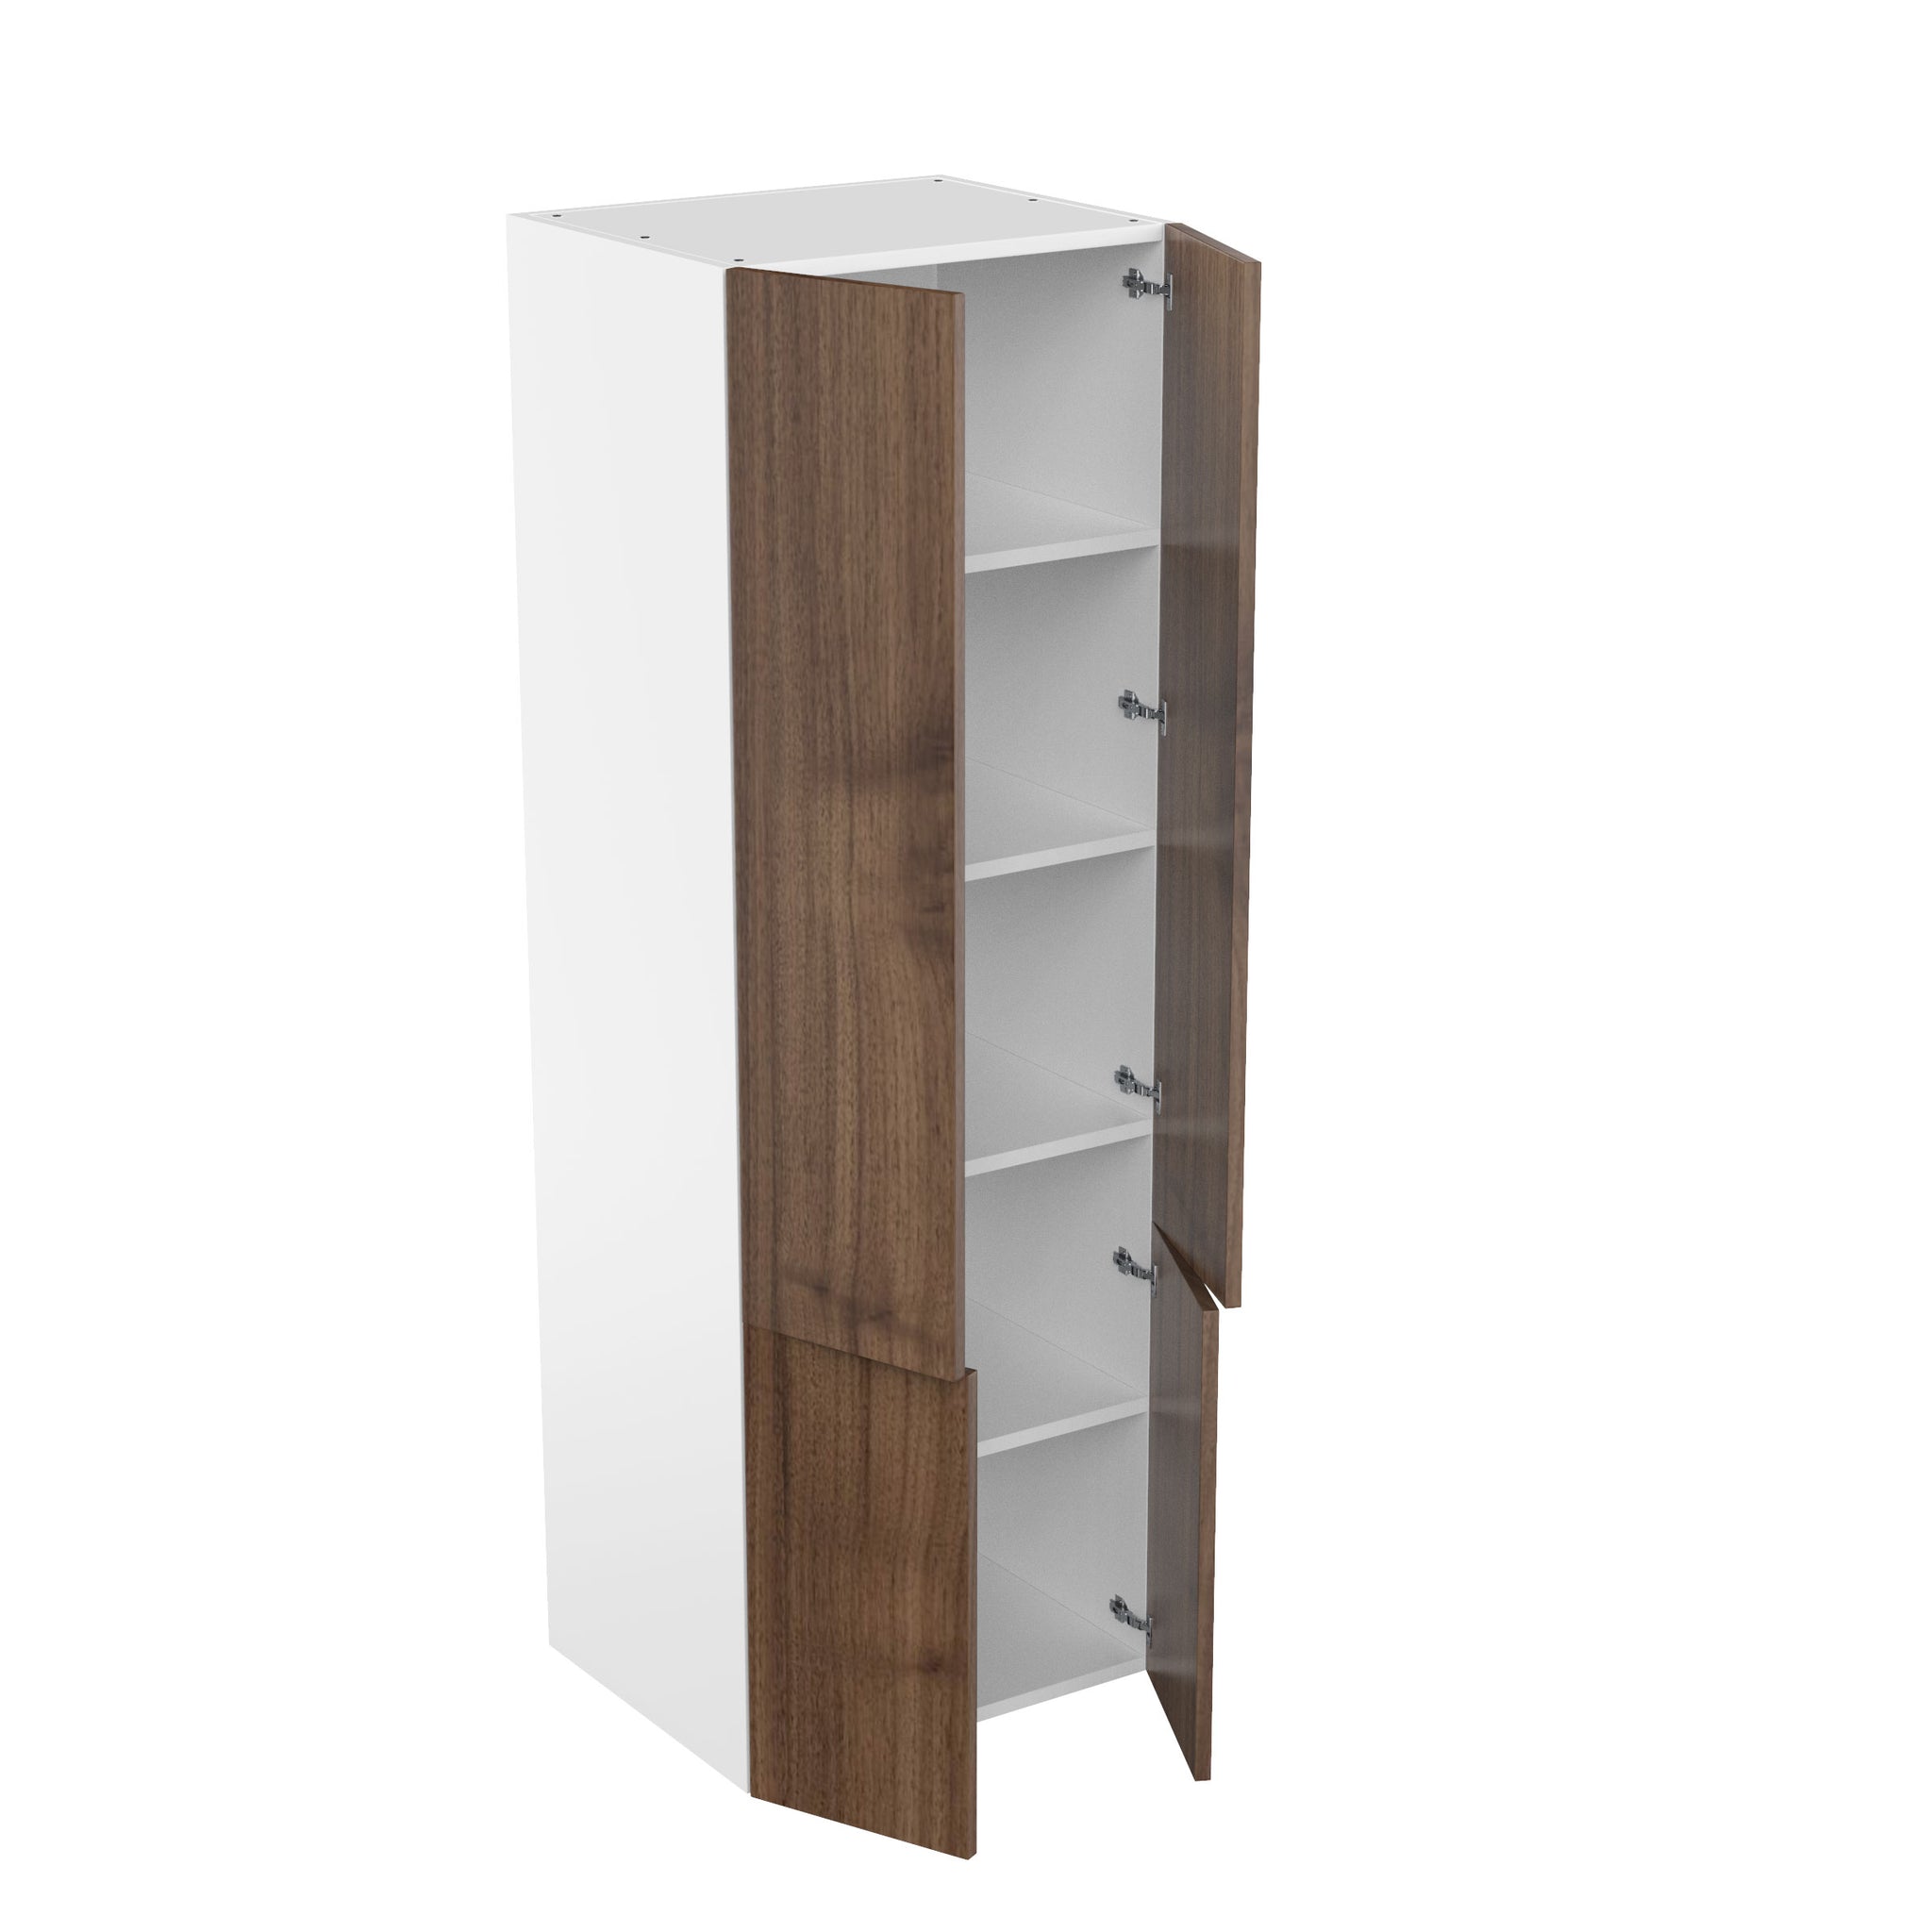 RTA - Walnut - Double Door Tall Cabinets | 30"W x 90"H x 23.8"D